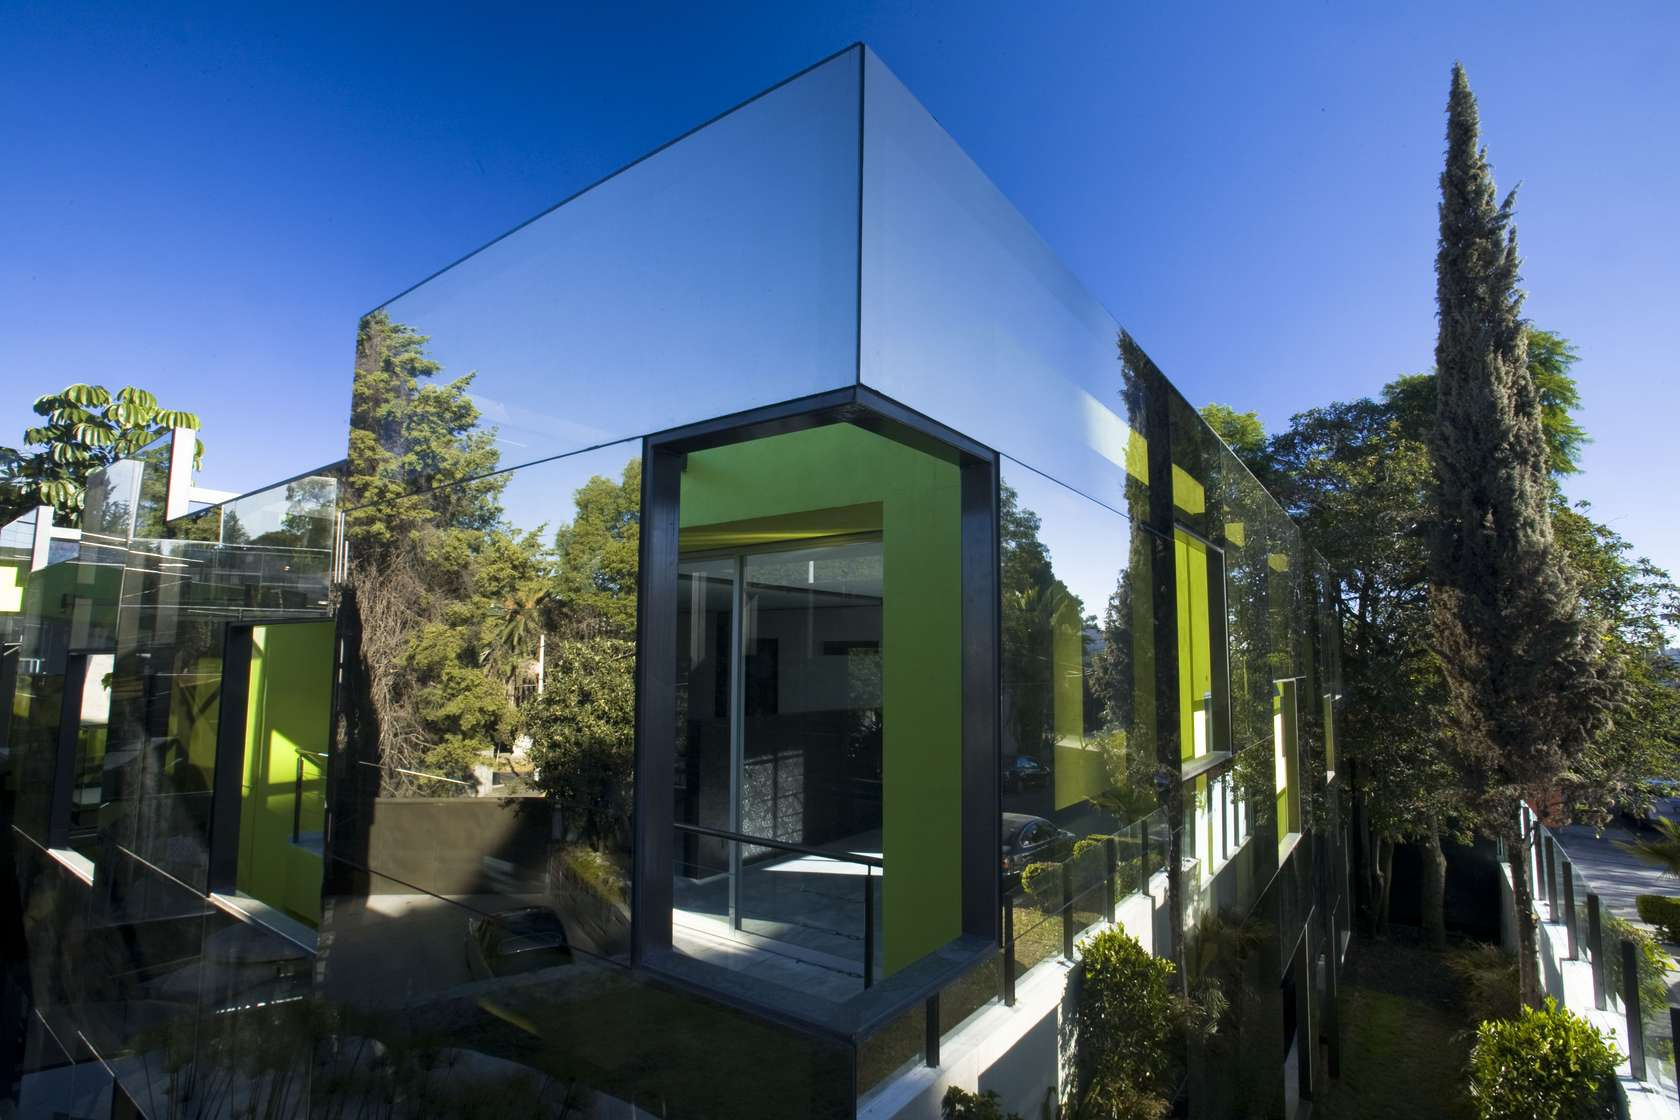 A 3000 négyzetlábnál nagyobb családi ház zsűri és közönségdíjasa a Villa Kogelhof (tervező: Paul de Ruiter Architects)
Zeeland, Hollandia